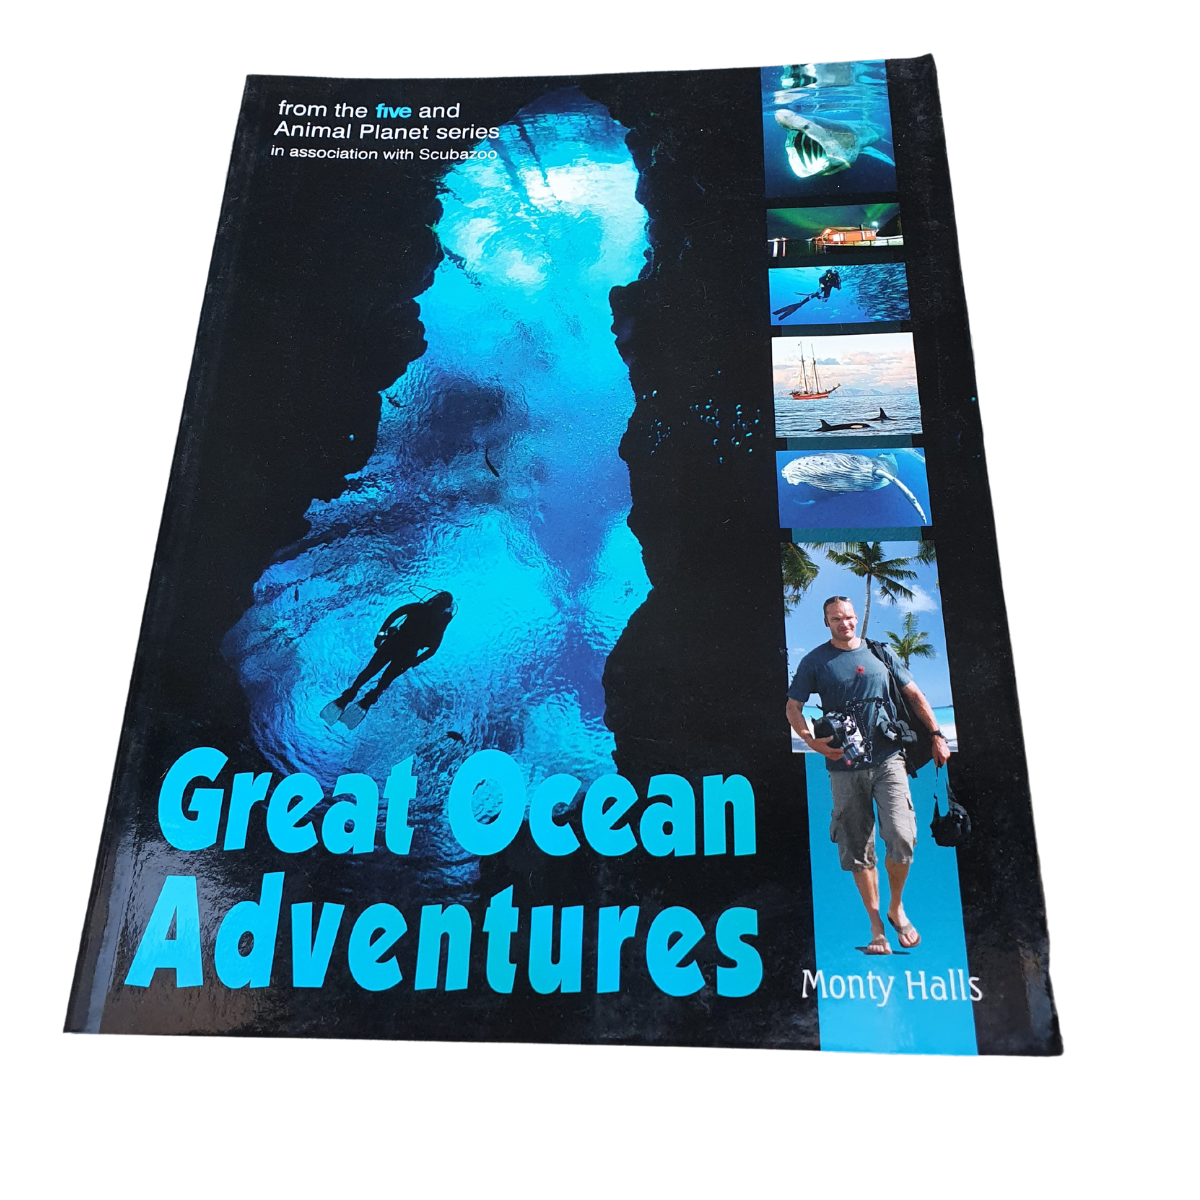 GREAT OCEANS ADVENTURES BOOK